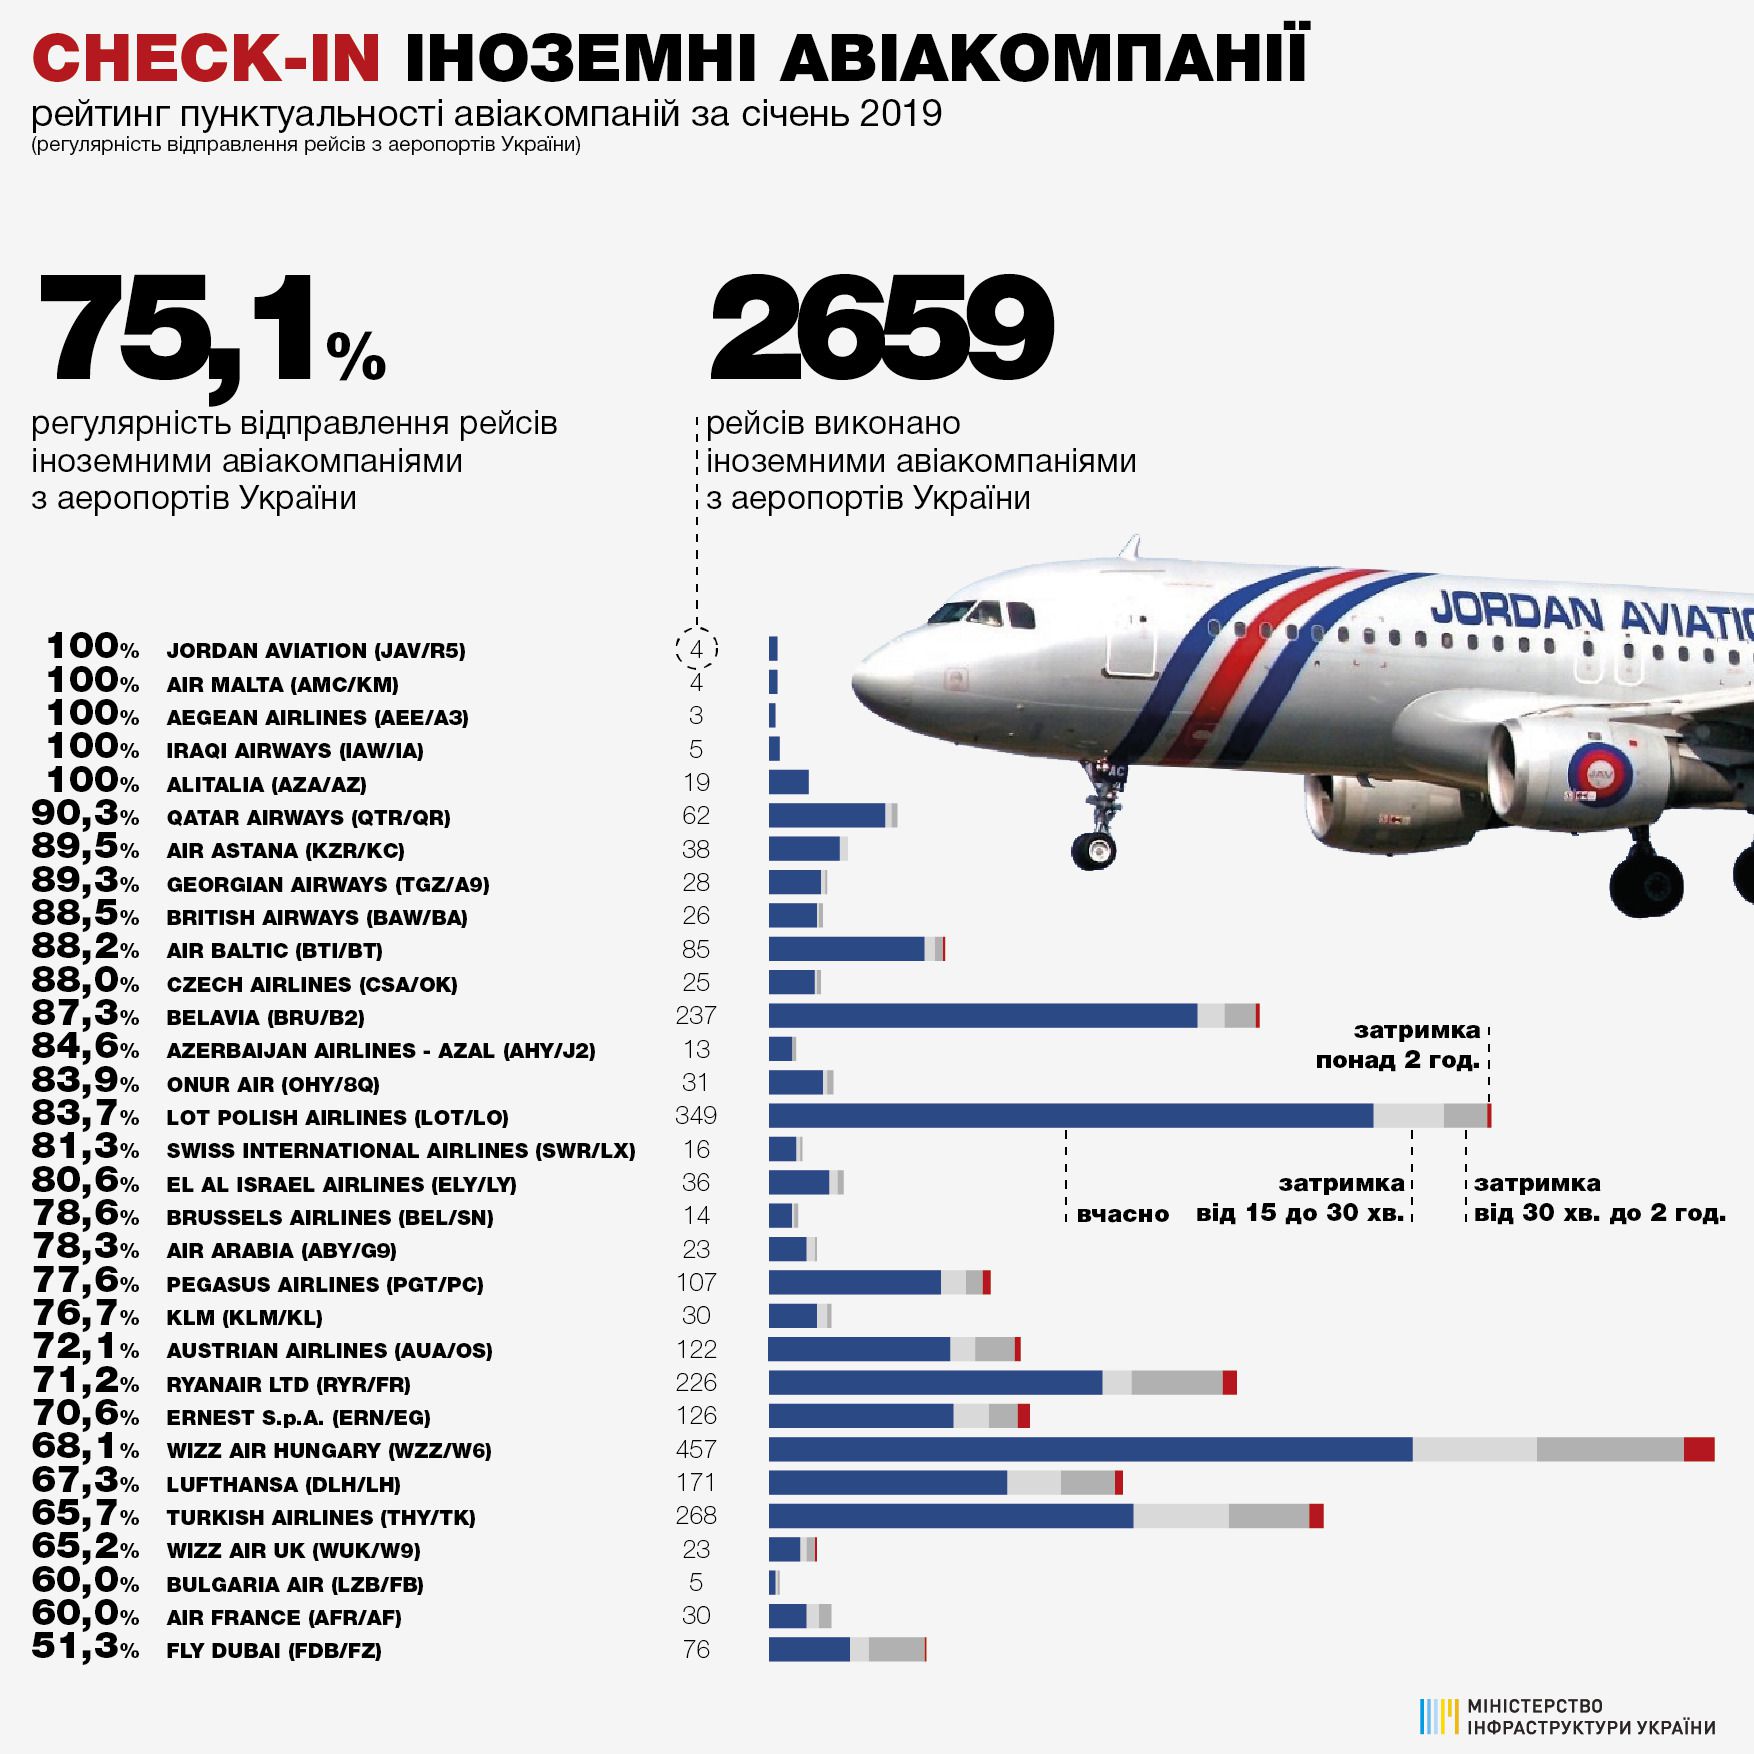 Приблизно кожен четвертий рейс української авіакомпанії в 2018 році не зміг вилетіти вчасно. До такого висновку прийшли чиновники Мінінфраструктури, які проаналізували льотну дисципліну вітчизняних і заморських авіаторів.